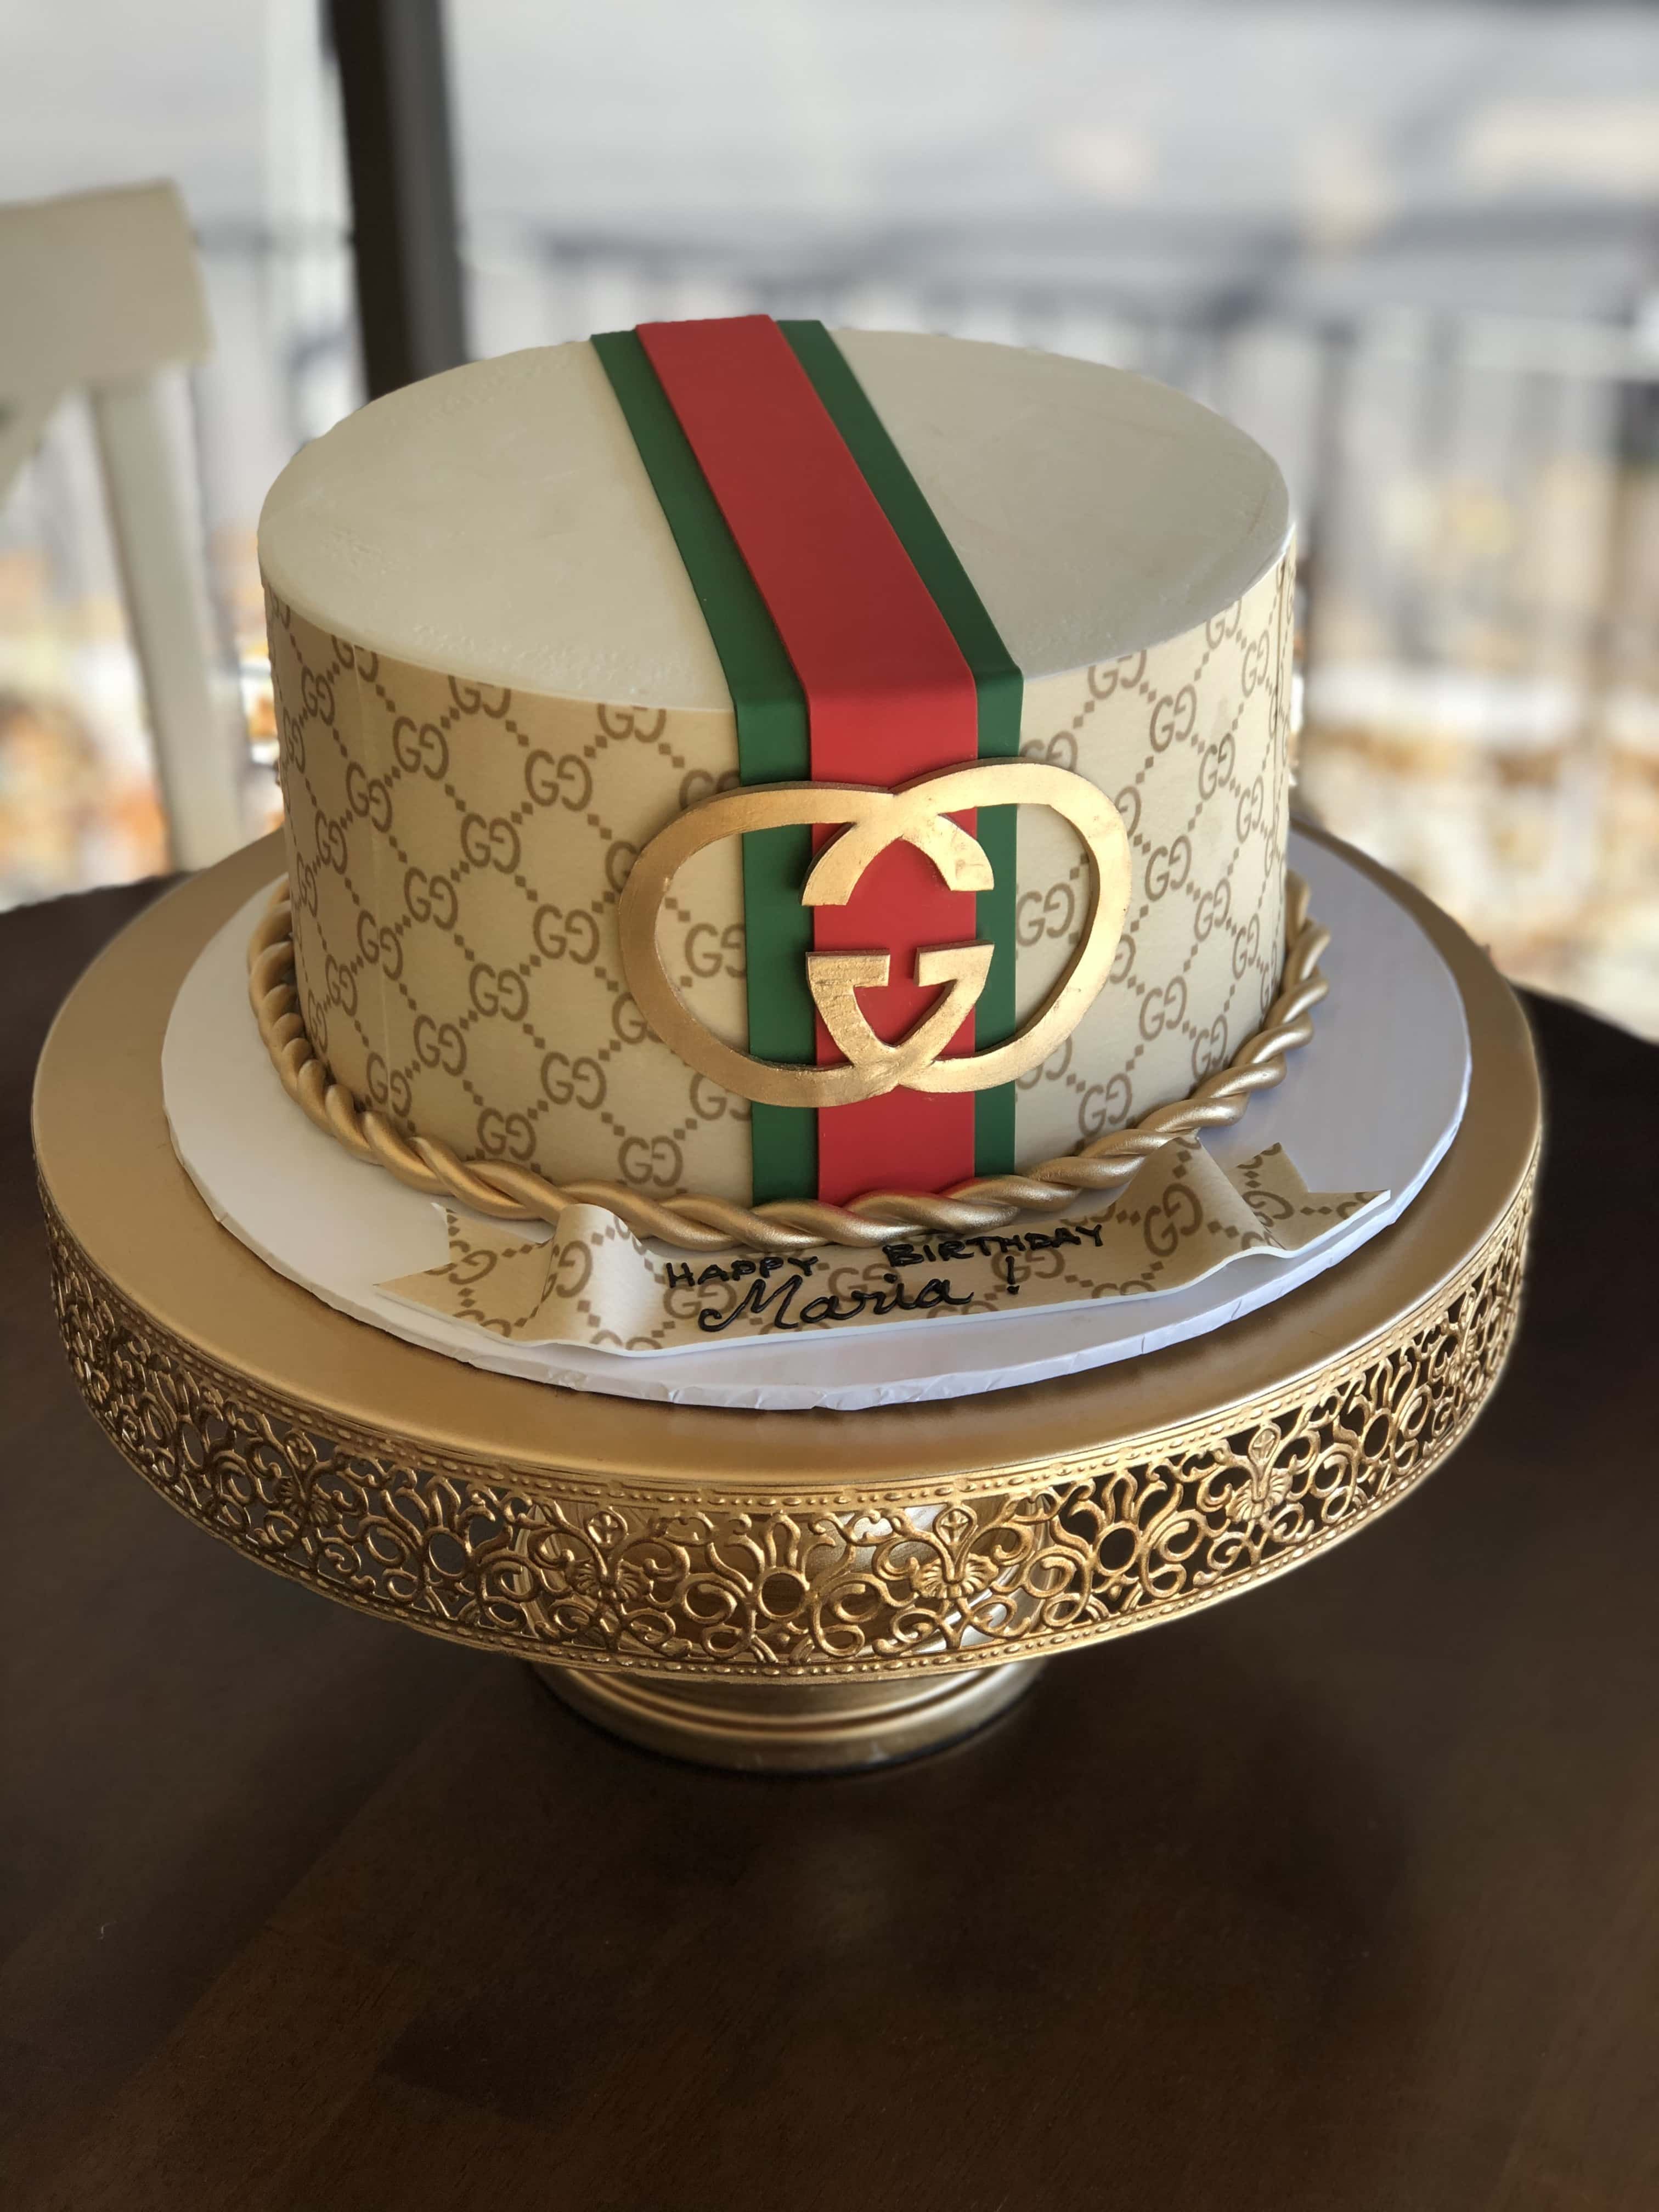 Gucci Birthday Cake Designs - KibrisPDR